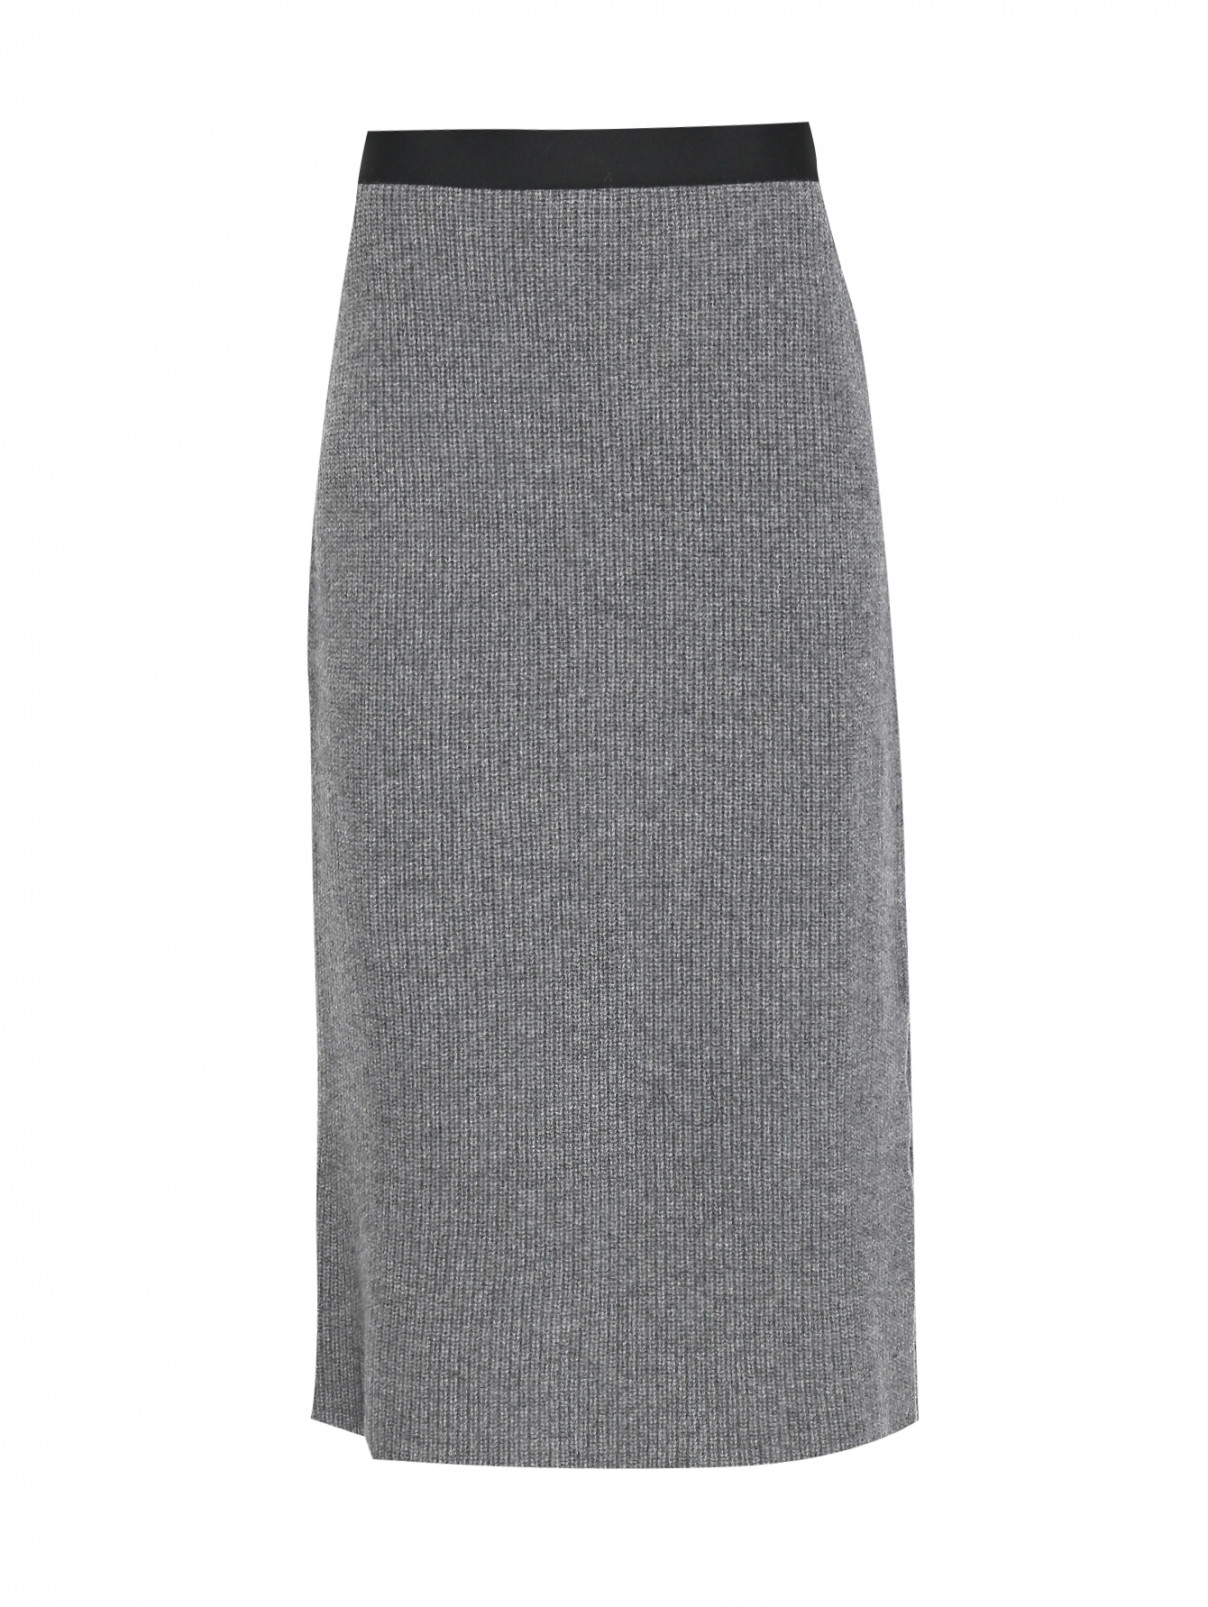 Трикотажная юбка из шерсти и кашемира Moncler  –  Общий вид  – Цвет:  Серый